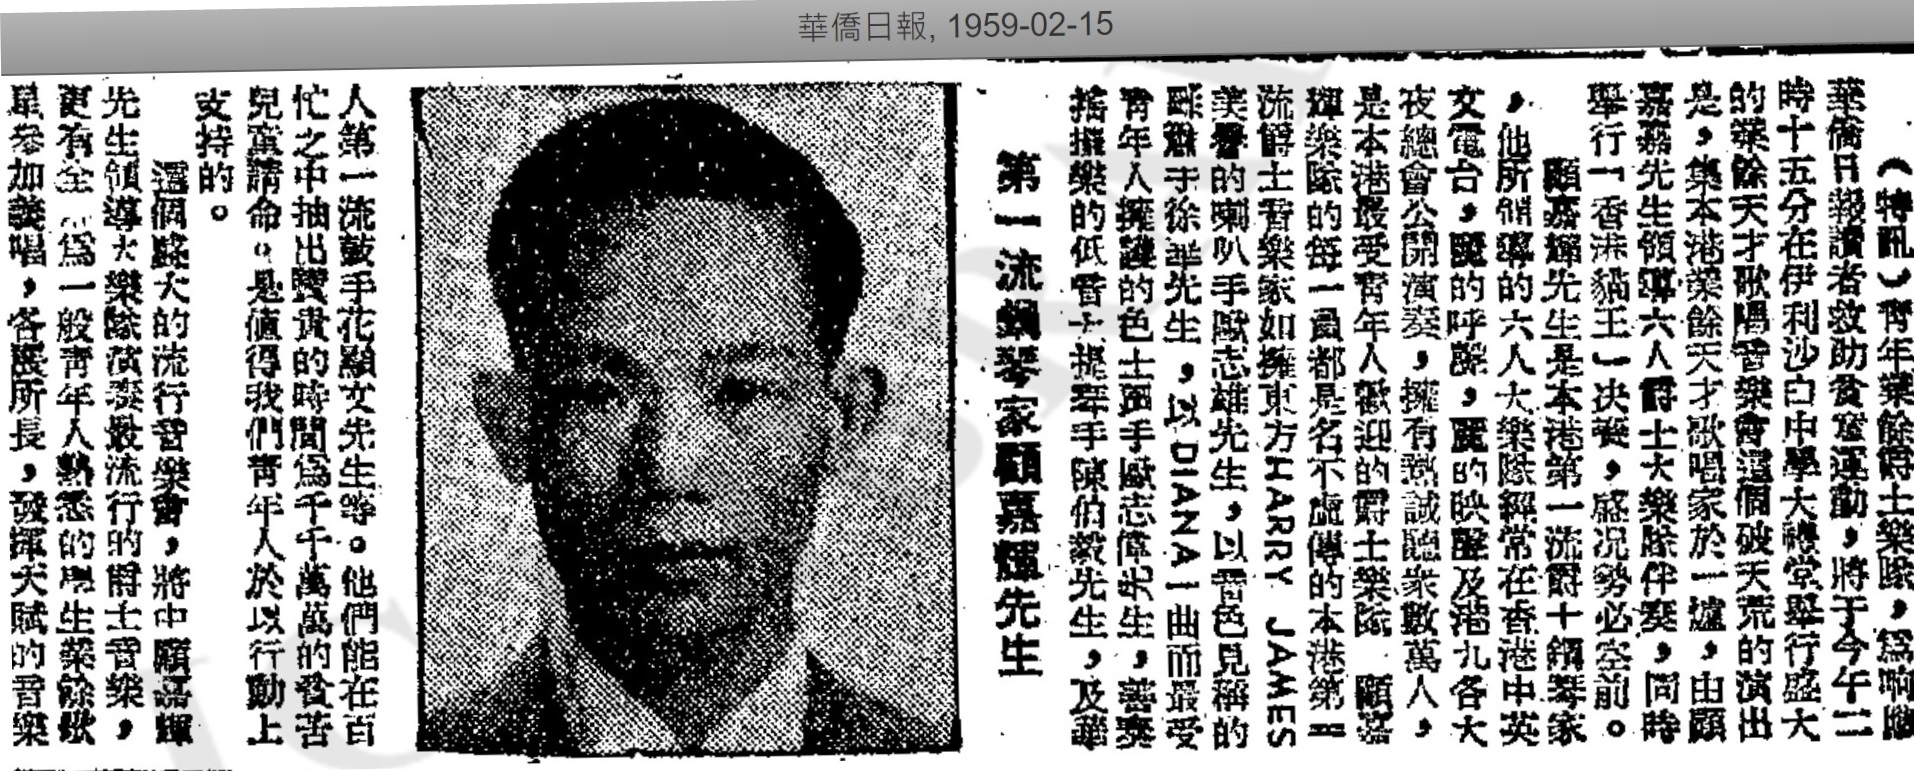 1959年華僑日報對顧嘉煇及其樂隊的介紹